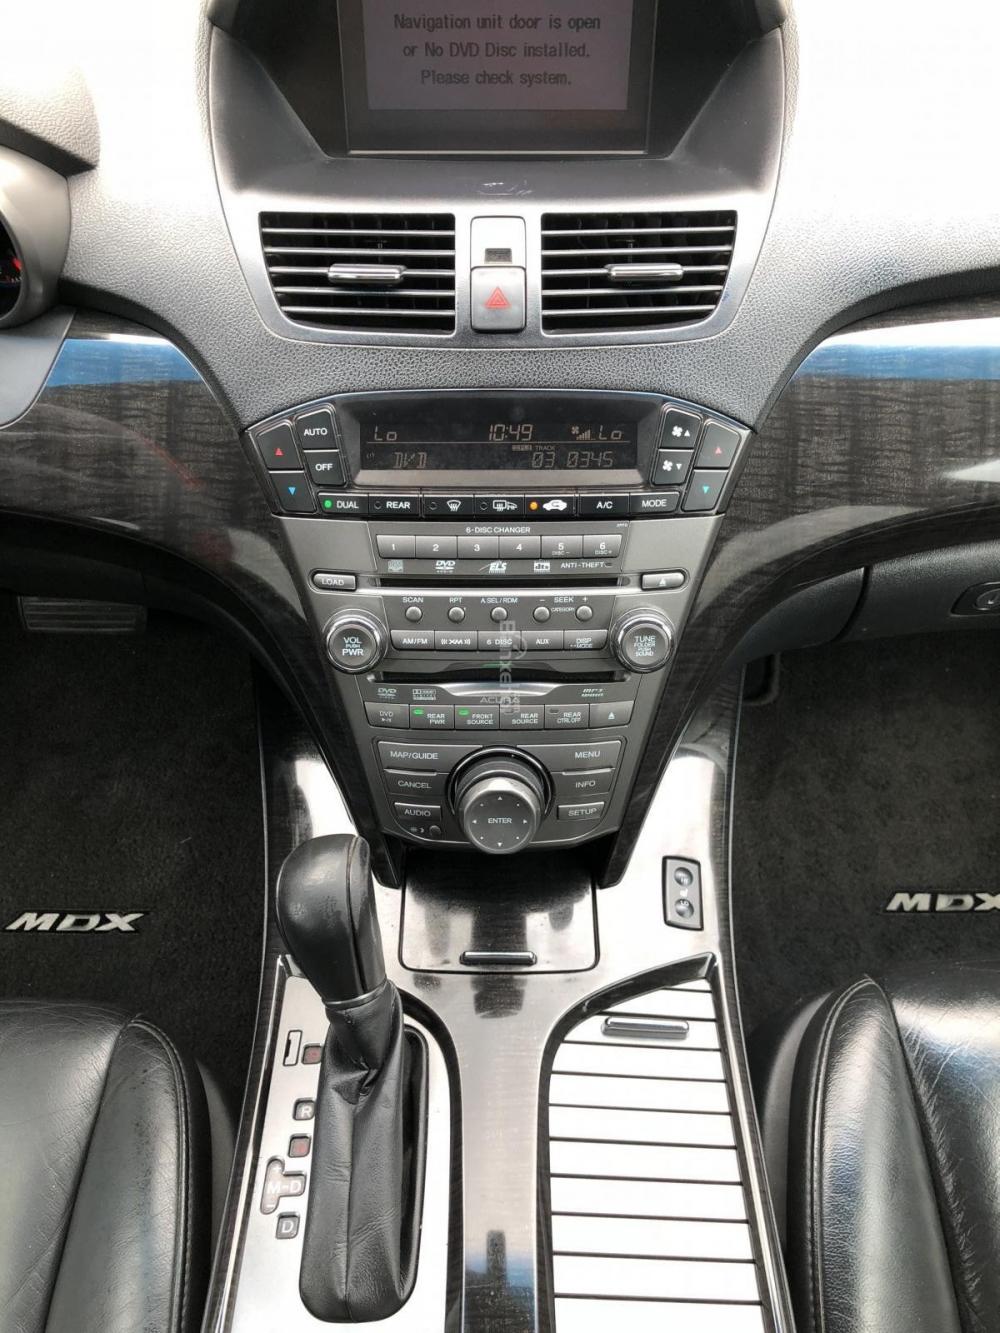 Acura MDX 2008 - Acura MDX 2008 7 chỗ, hàng full cao cấp đủ đồ chơi, màu đen, số tự động 8 cấp